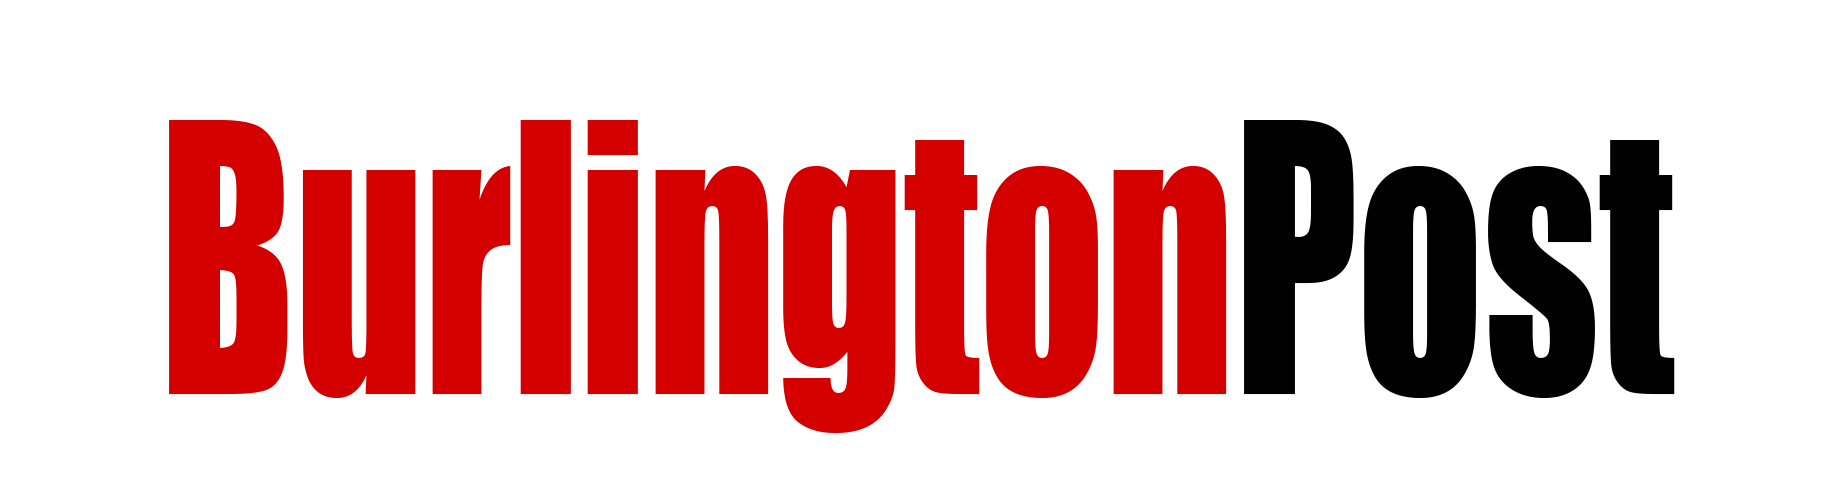 burlington